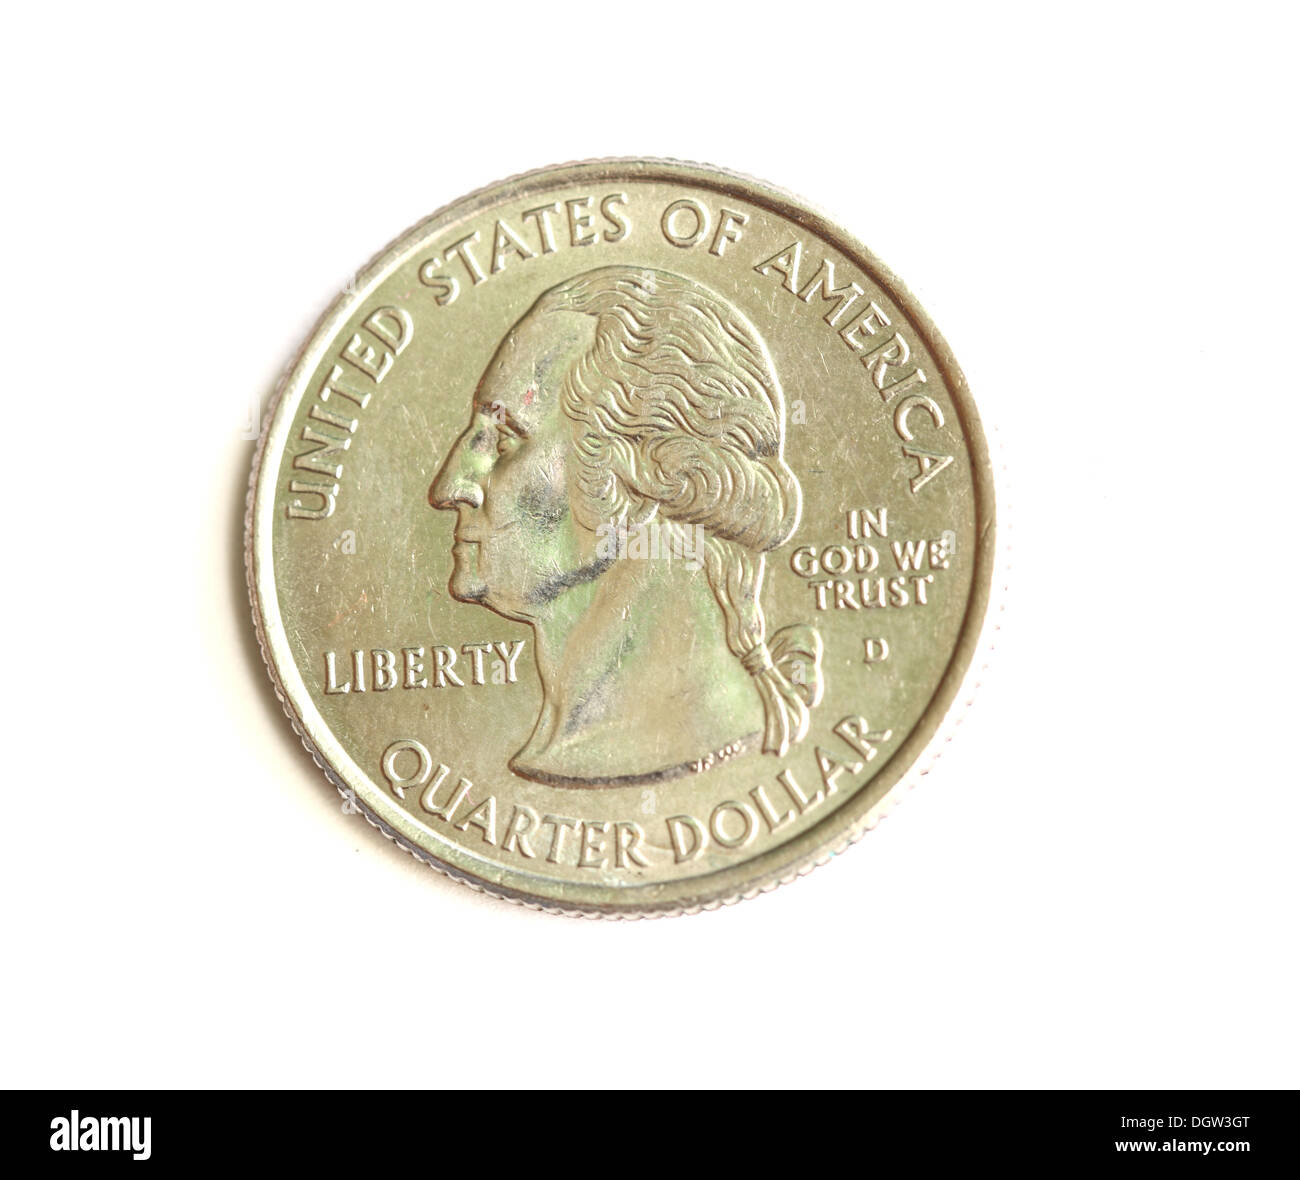 Đồng 25 cent - Với hình ảnh của chú chim đặc trưng, đồng 25 cent nổi tiếng với giá trị cao và tính sưu tập. Hãy xem hình ảnh này để thấy sự quý giá của nó và cùng mở rộng sự hiểu biết về tiền tệ.